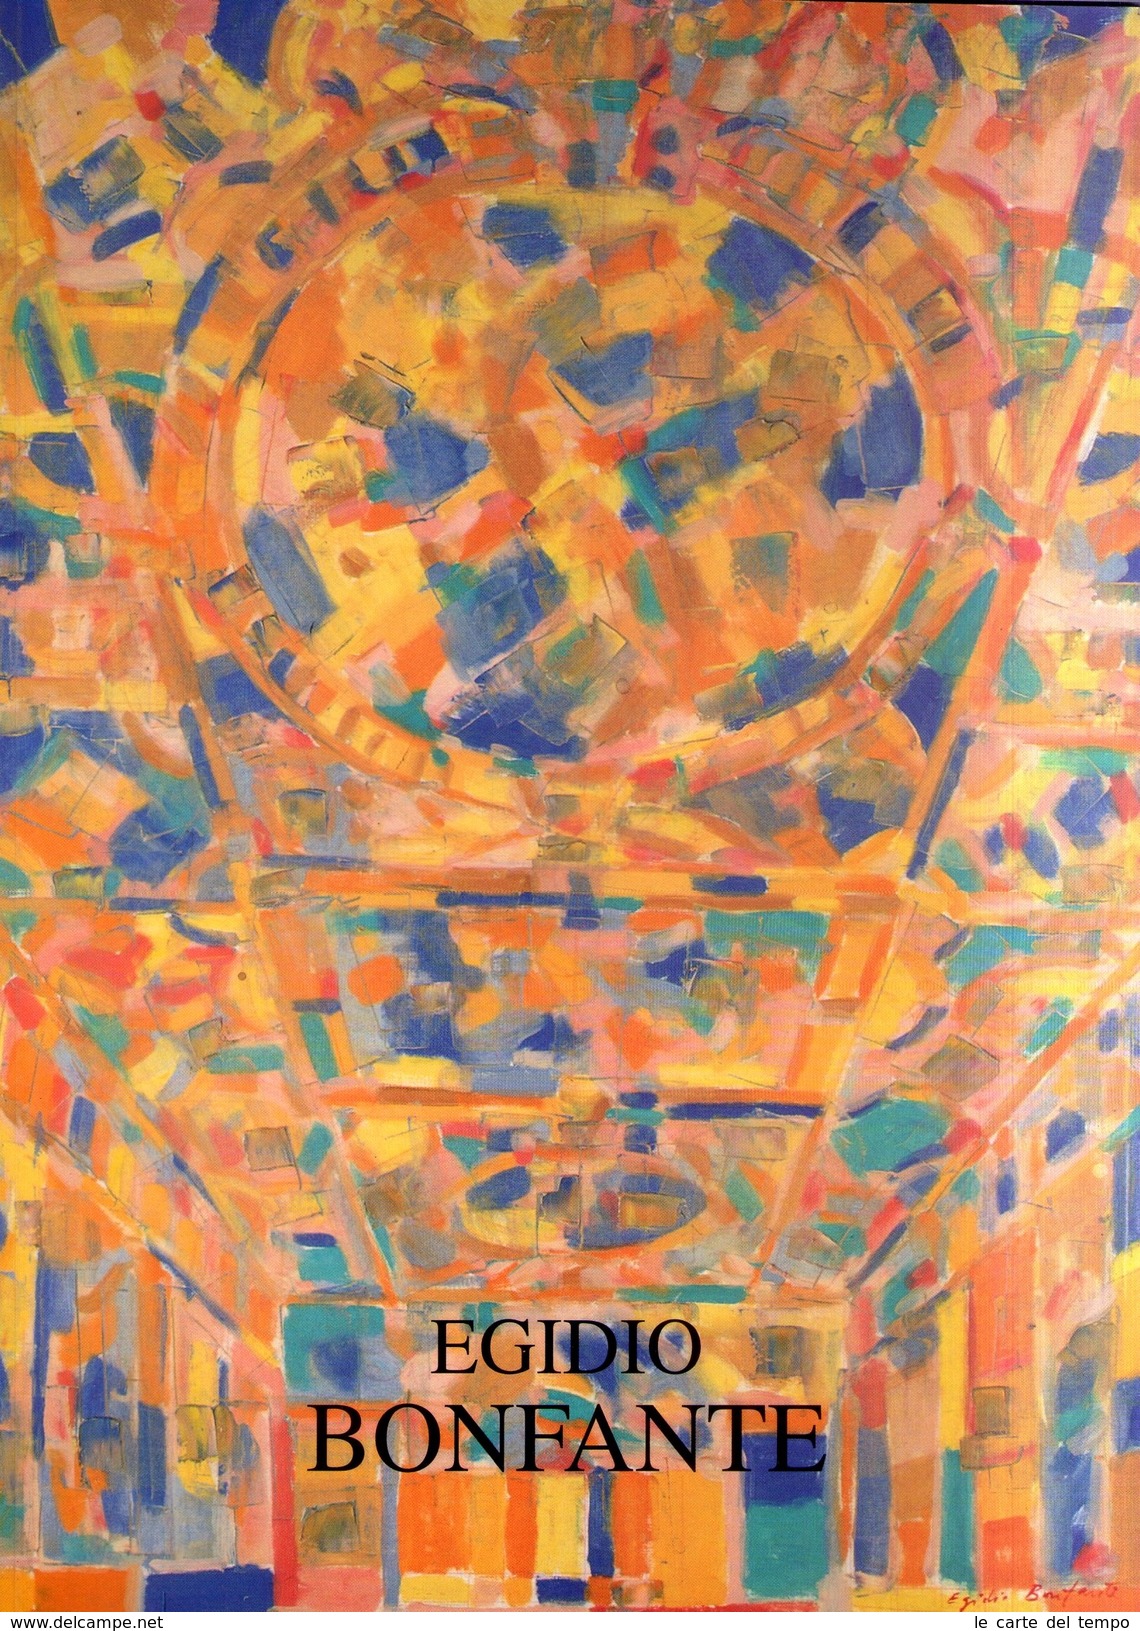 Catalogo EGIDIO BONFANTE A Cura Di Angelo Andreotti. Civiche Gallerie D'Arte Moderna E Contemporanea. Comune Di Ferrara - Arte, Architettura